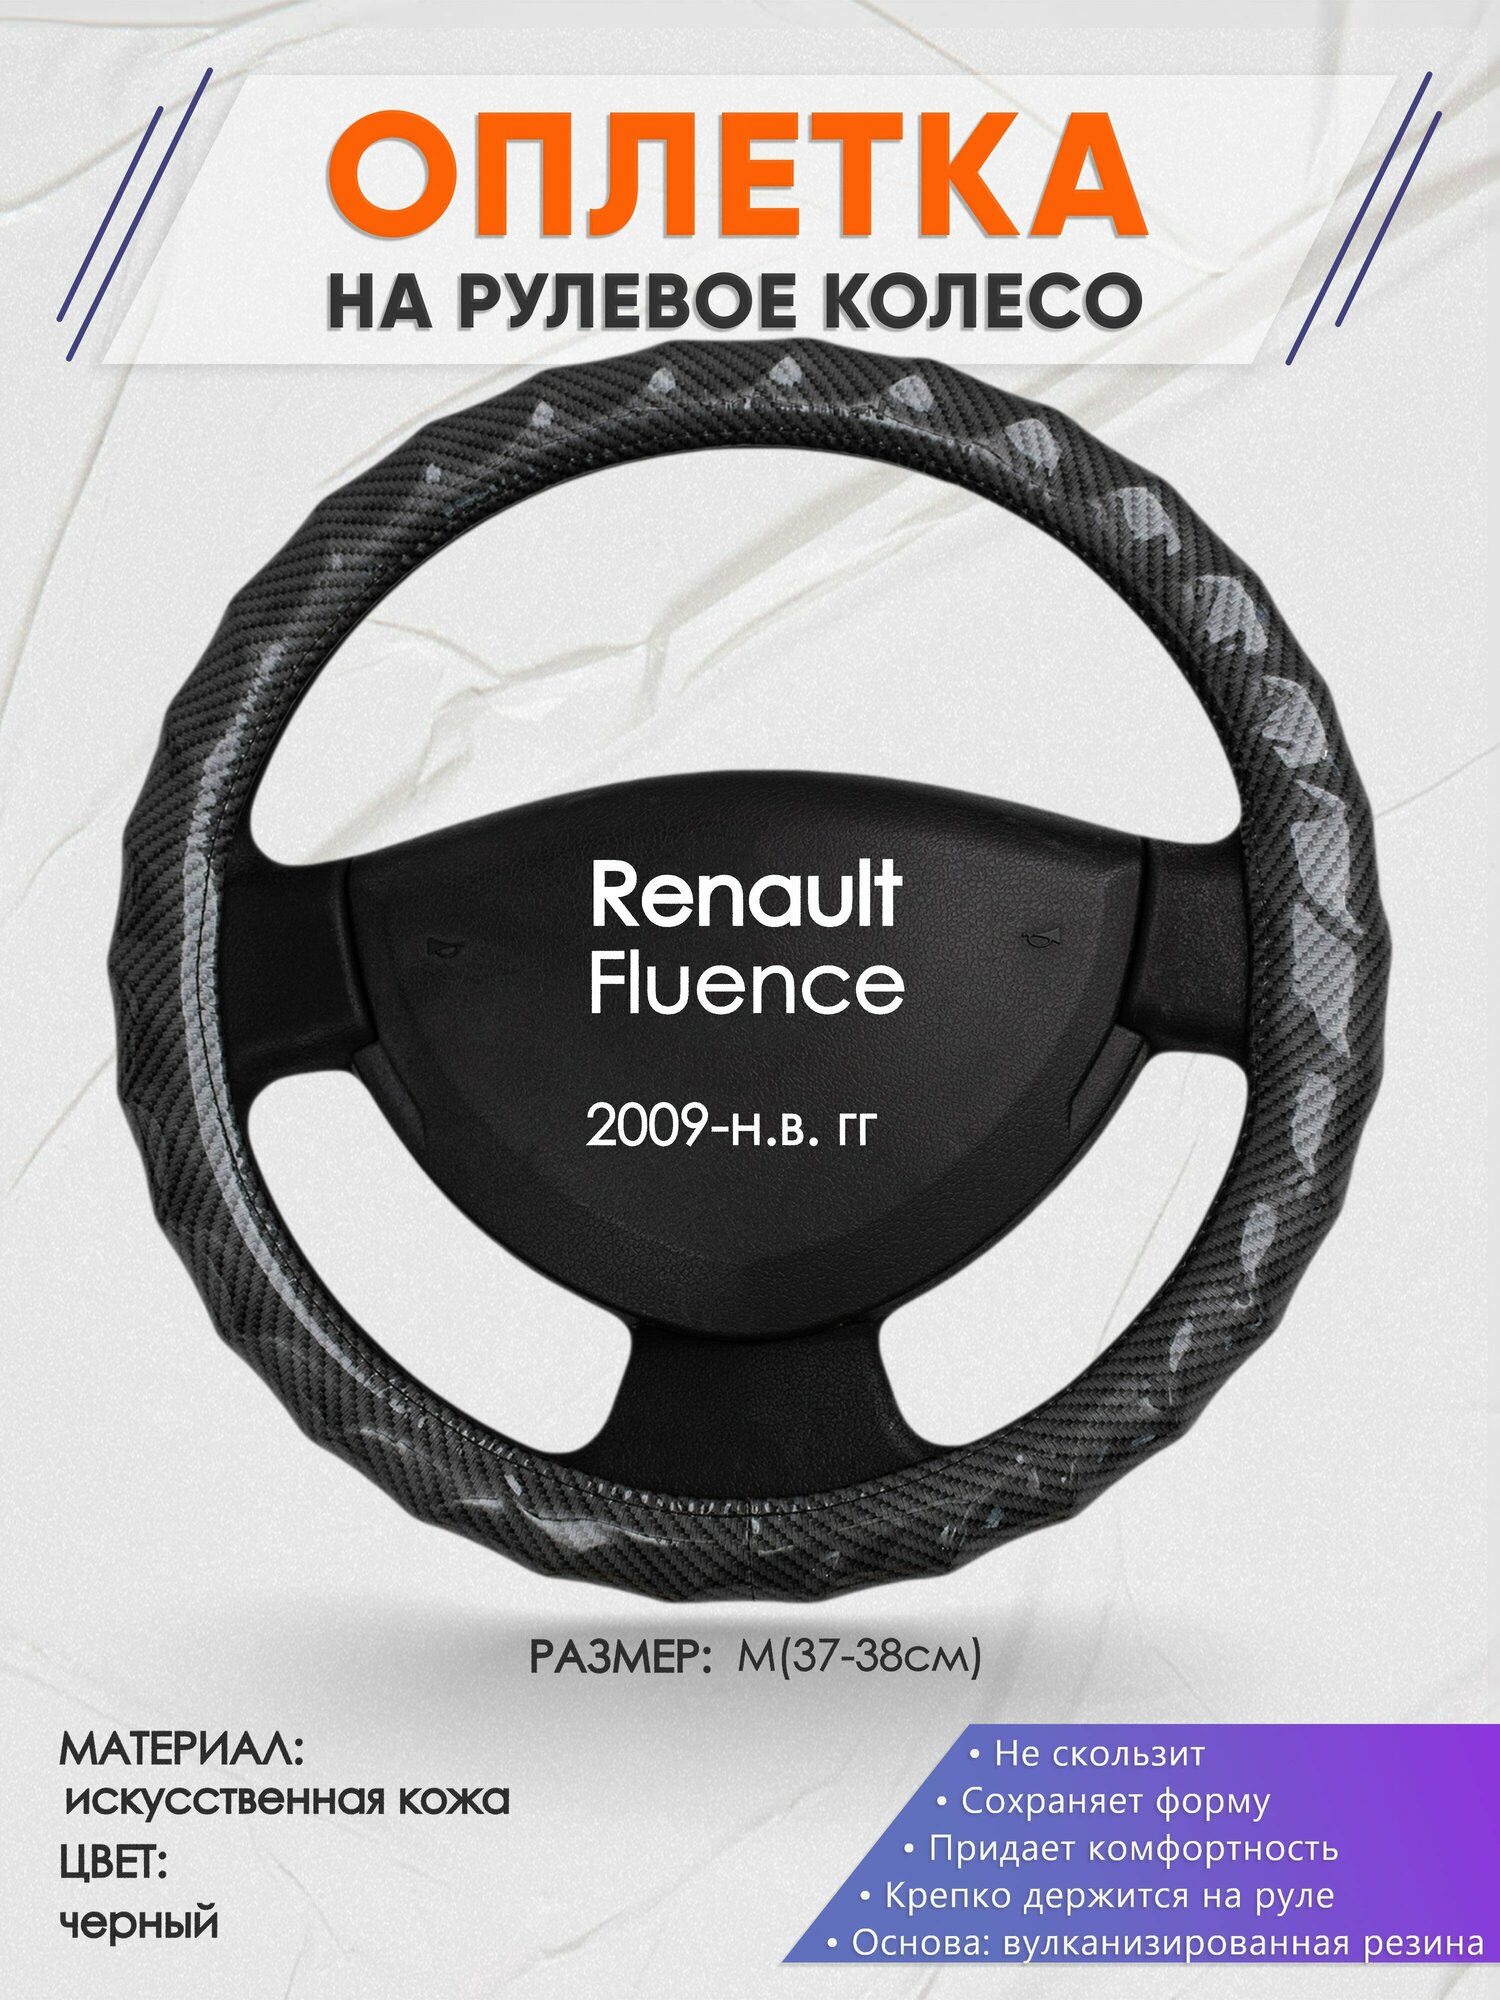 Оплетка на руль для Renault Fluence (Рено Флюенс) 2009-н. в, M(37-38см), Искусственная кожа 15